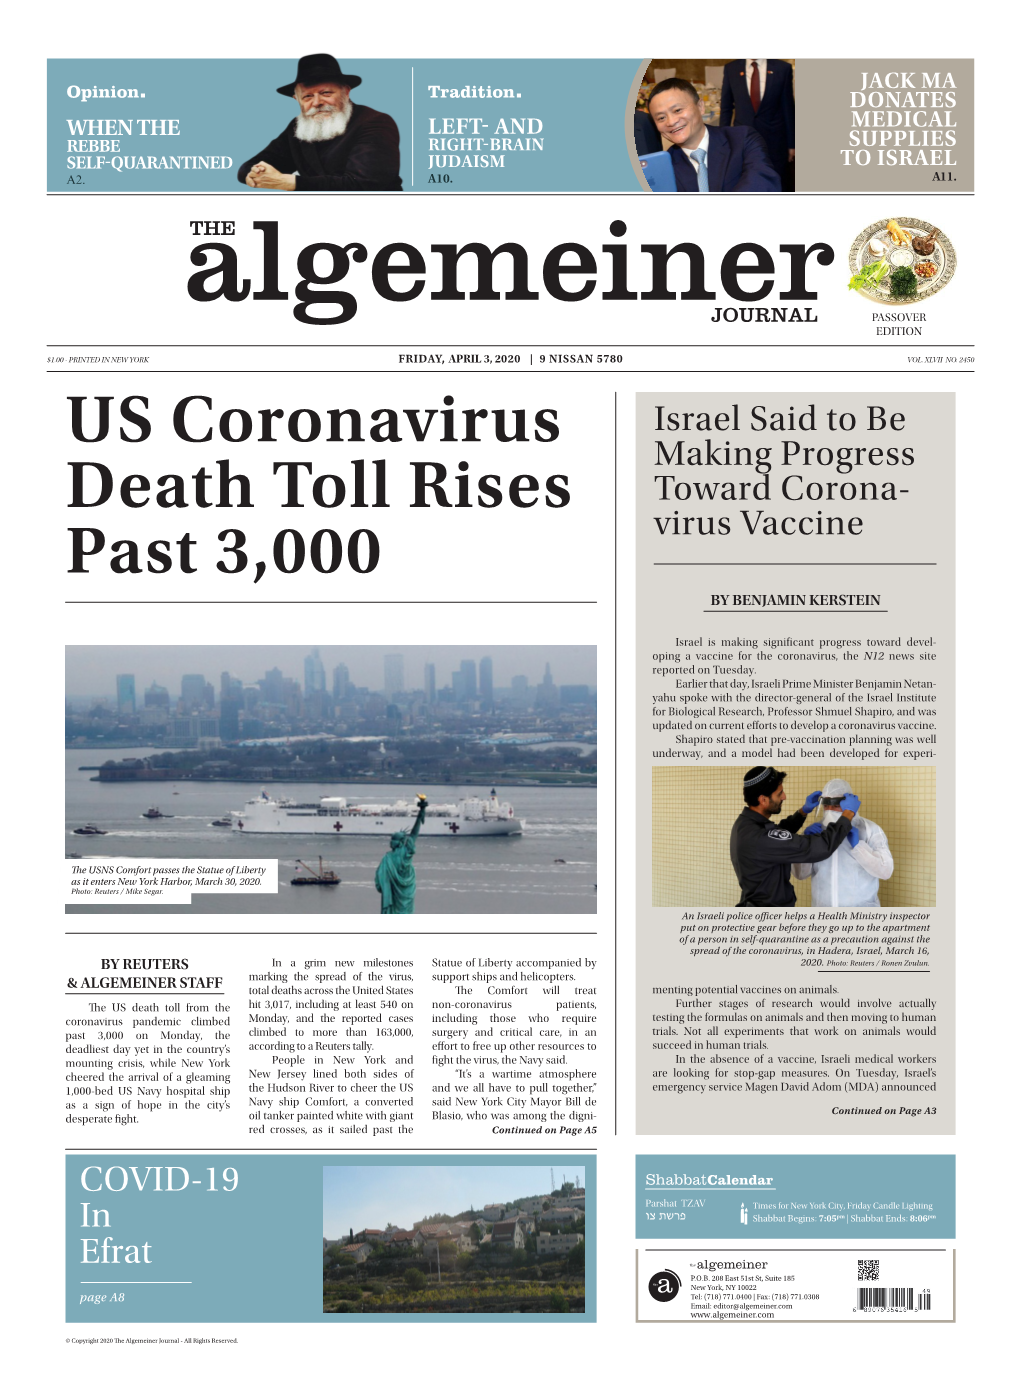 US Coronavirus Death Toll Rises Past 3,000